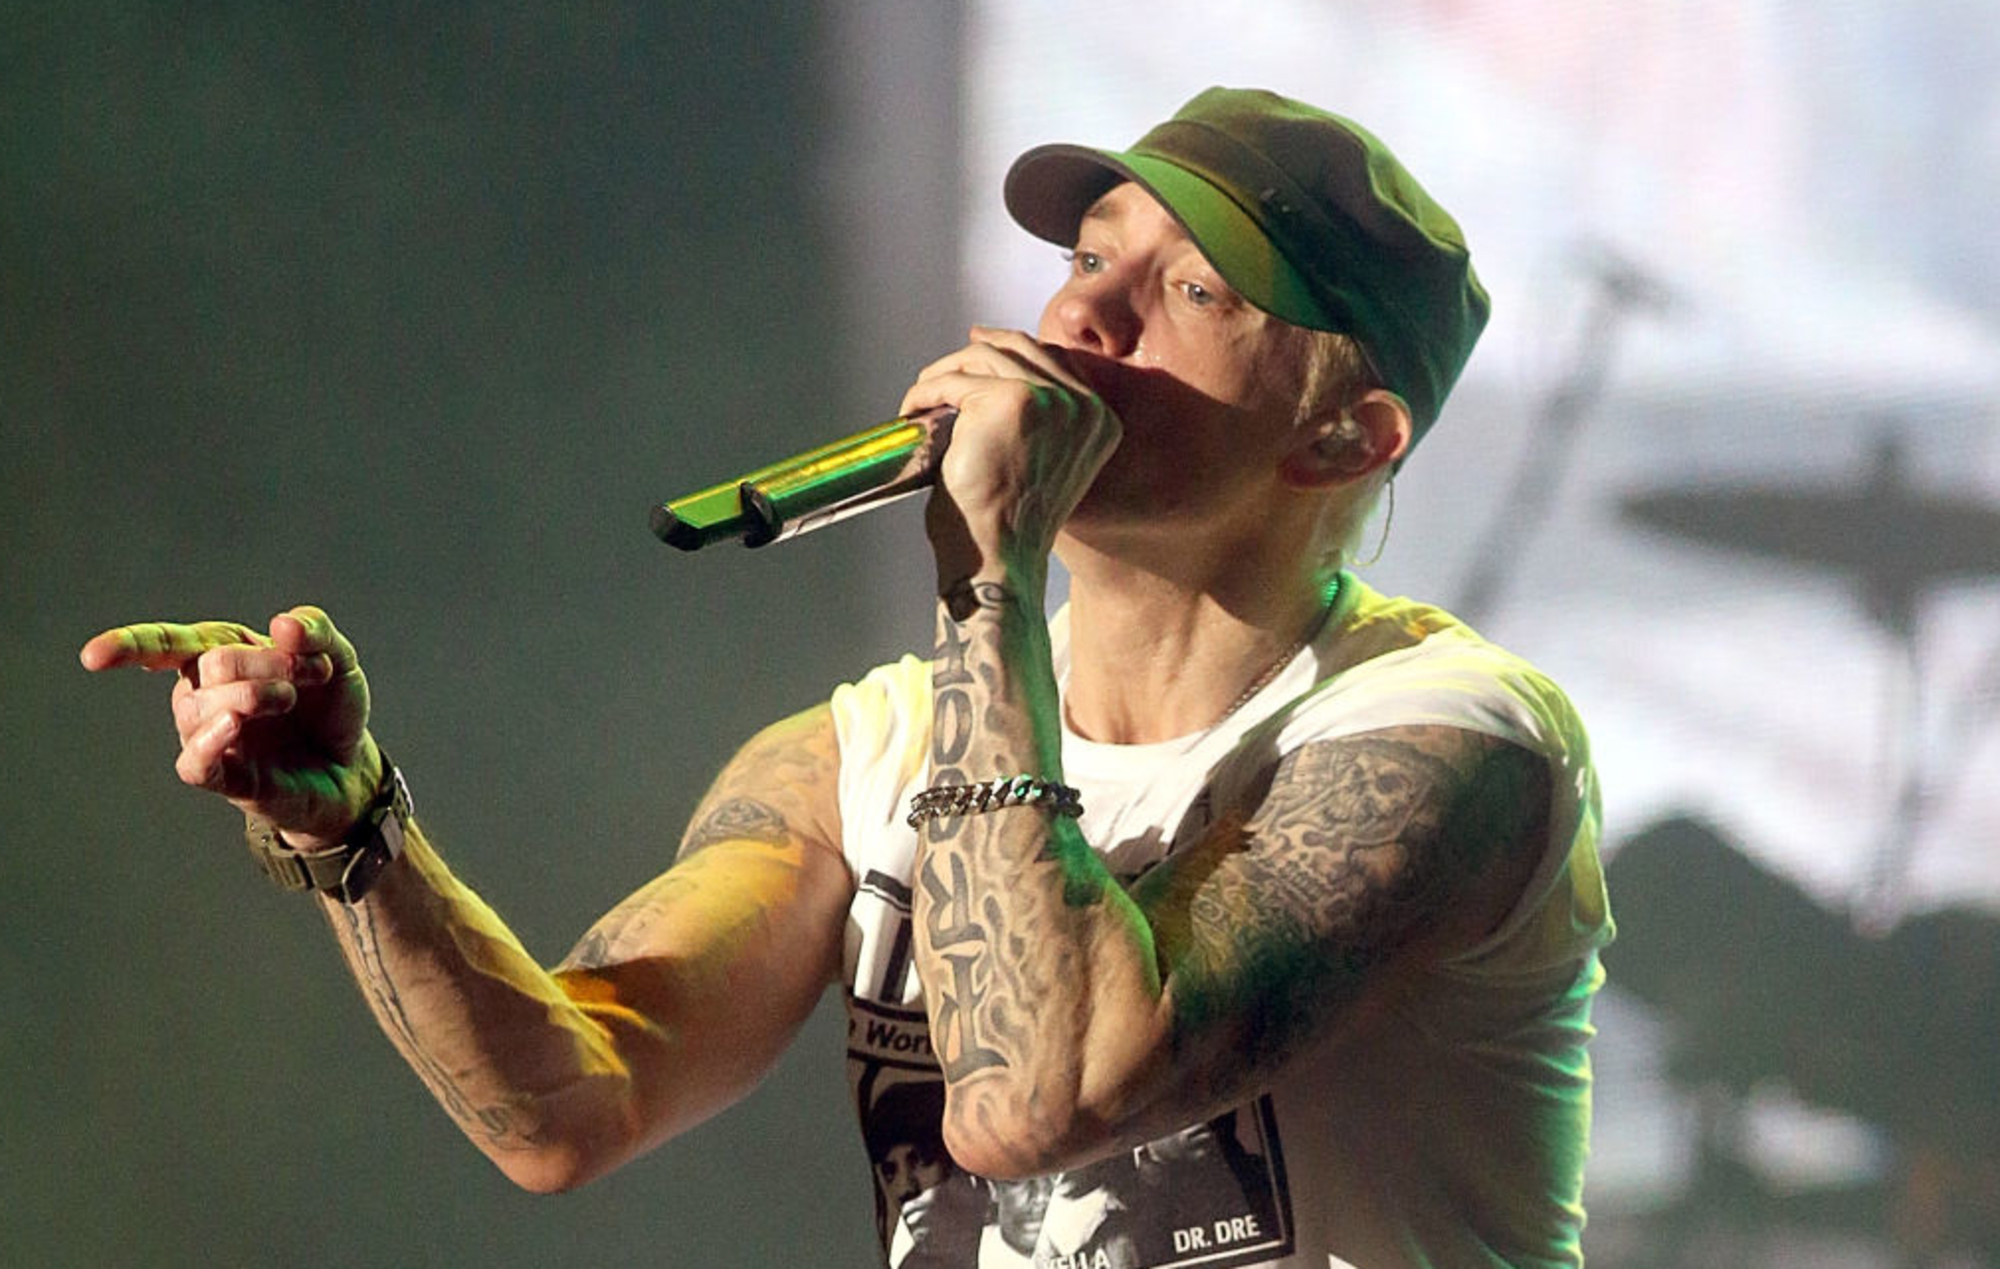 Los fans de Eminem están convencidos de que lanzará un nuevo álbum el viernes.